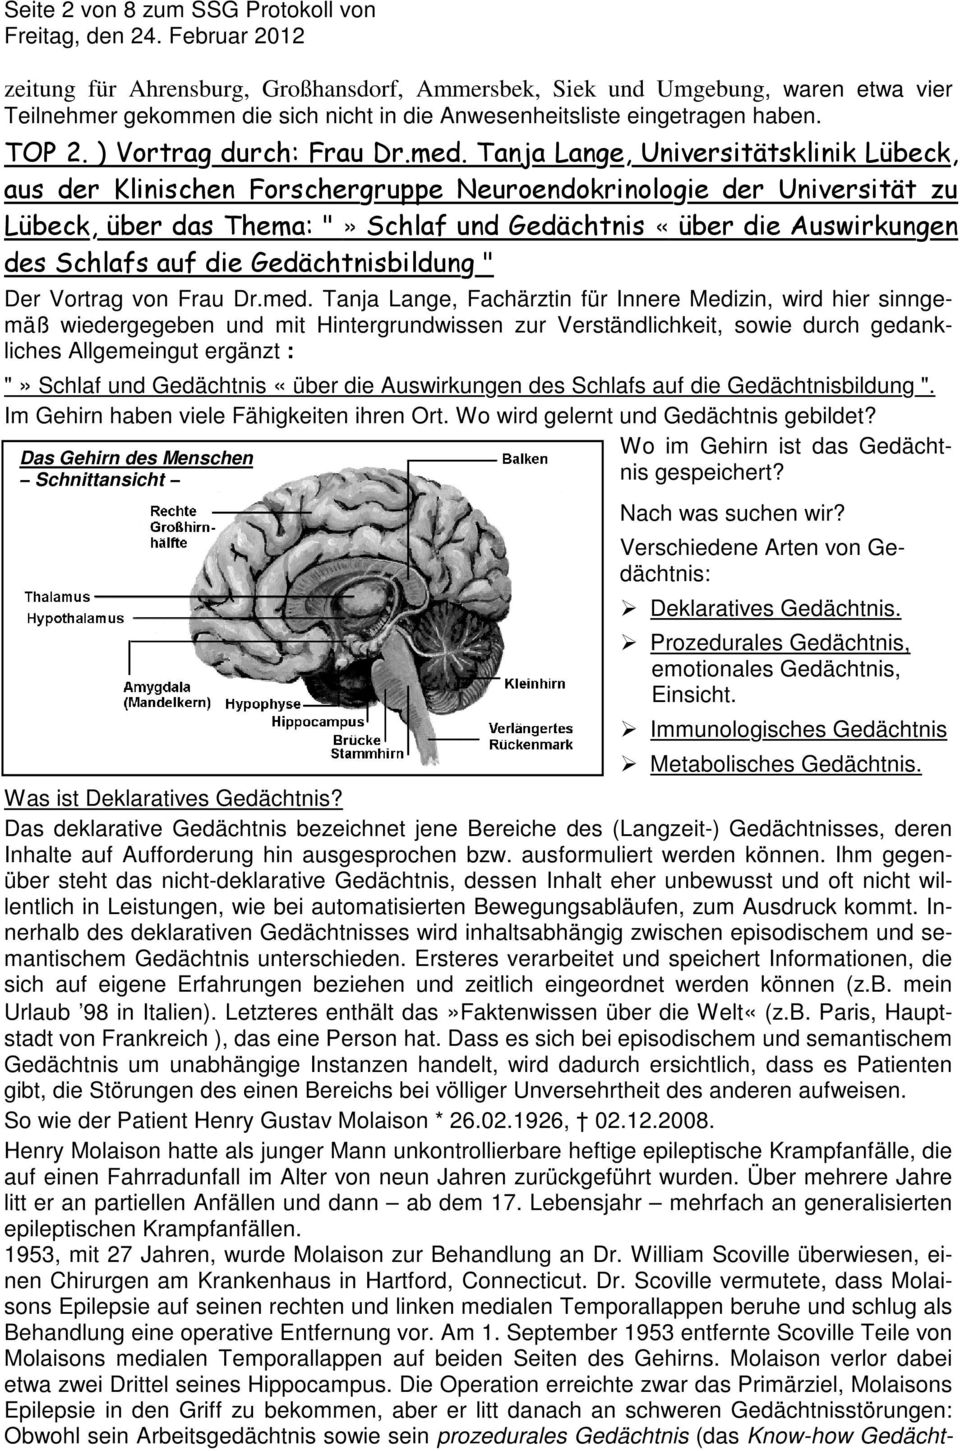 Tanja Lange, Universitätsklinik Lübeck, aus der Klinischen Forschergruppe Neuroendokrinologie der Universität zu Lübeck, über das Thema: "» Schlaf und Gedächtnis «über die Auswirkungen des Schlafs